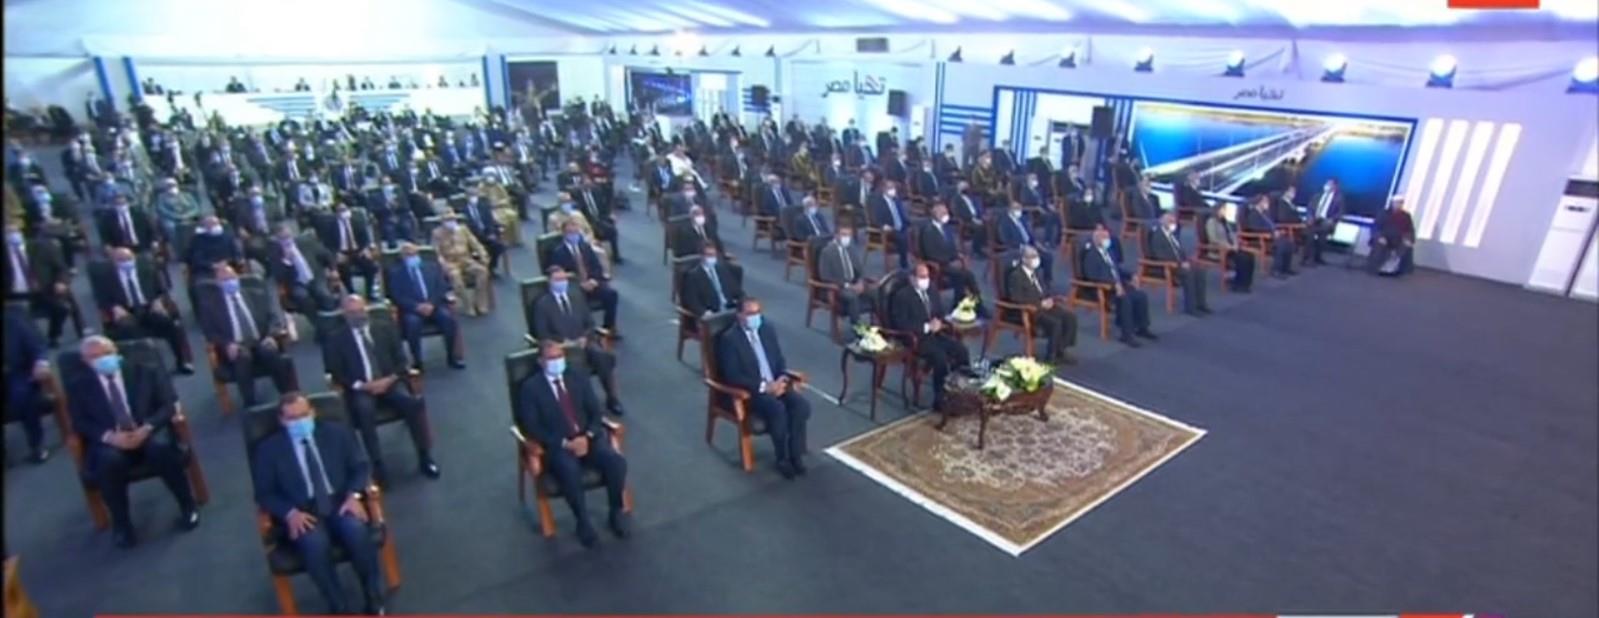 الرئيس السيسي يفتتح عددا من المشروعات القومية الجديدة بالمنيا عبر الفيديو كونفرنس